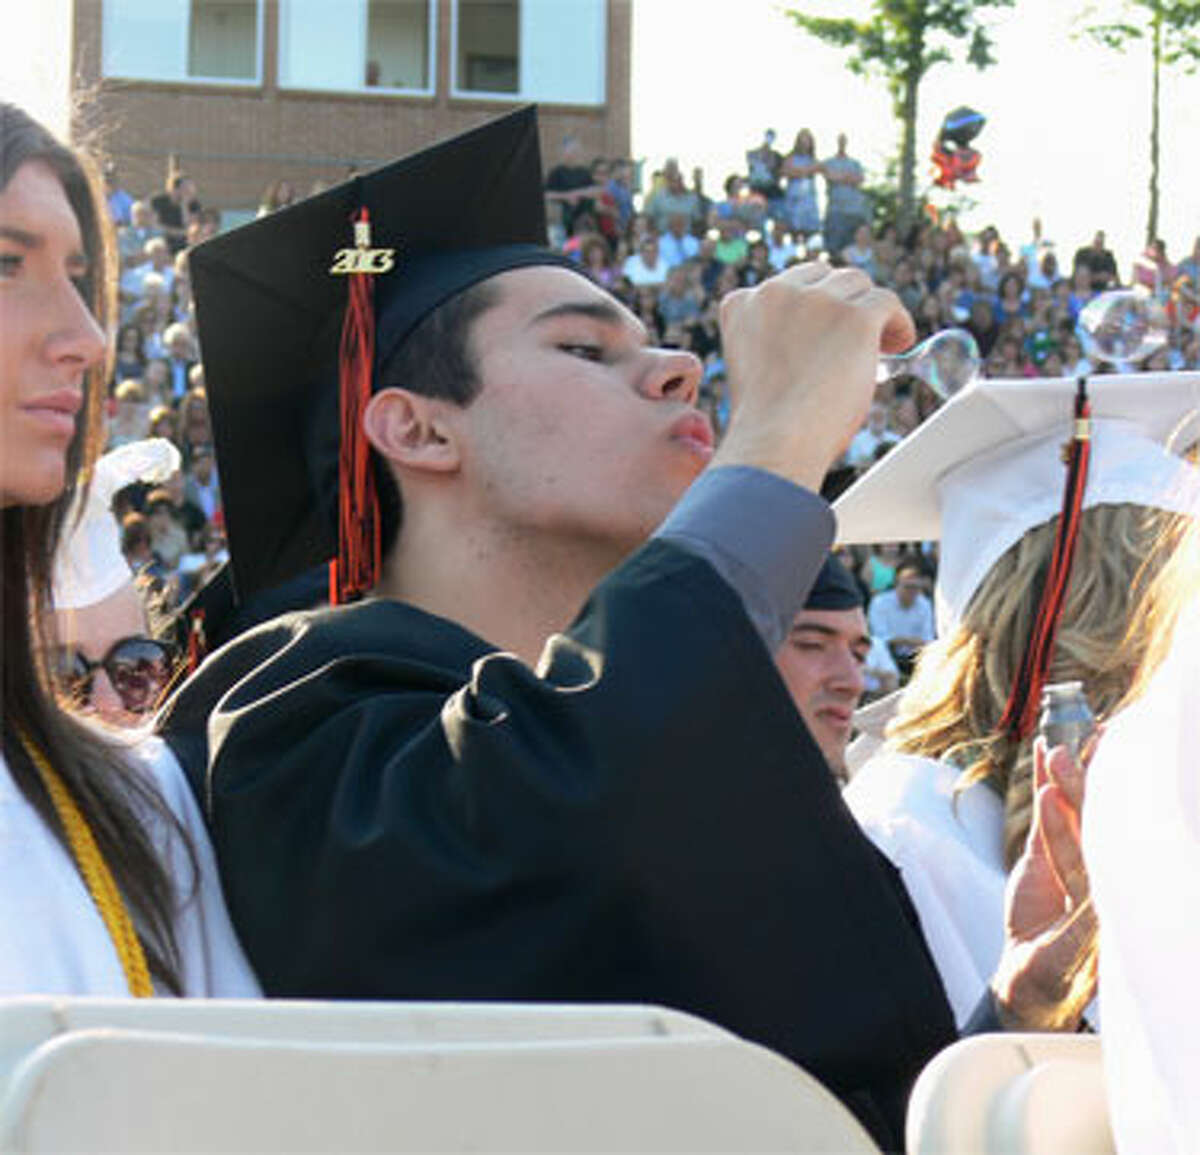 Shelton High graduate Adam Joseph Floczak blows bubbles during the ceremony.